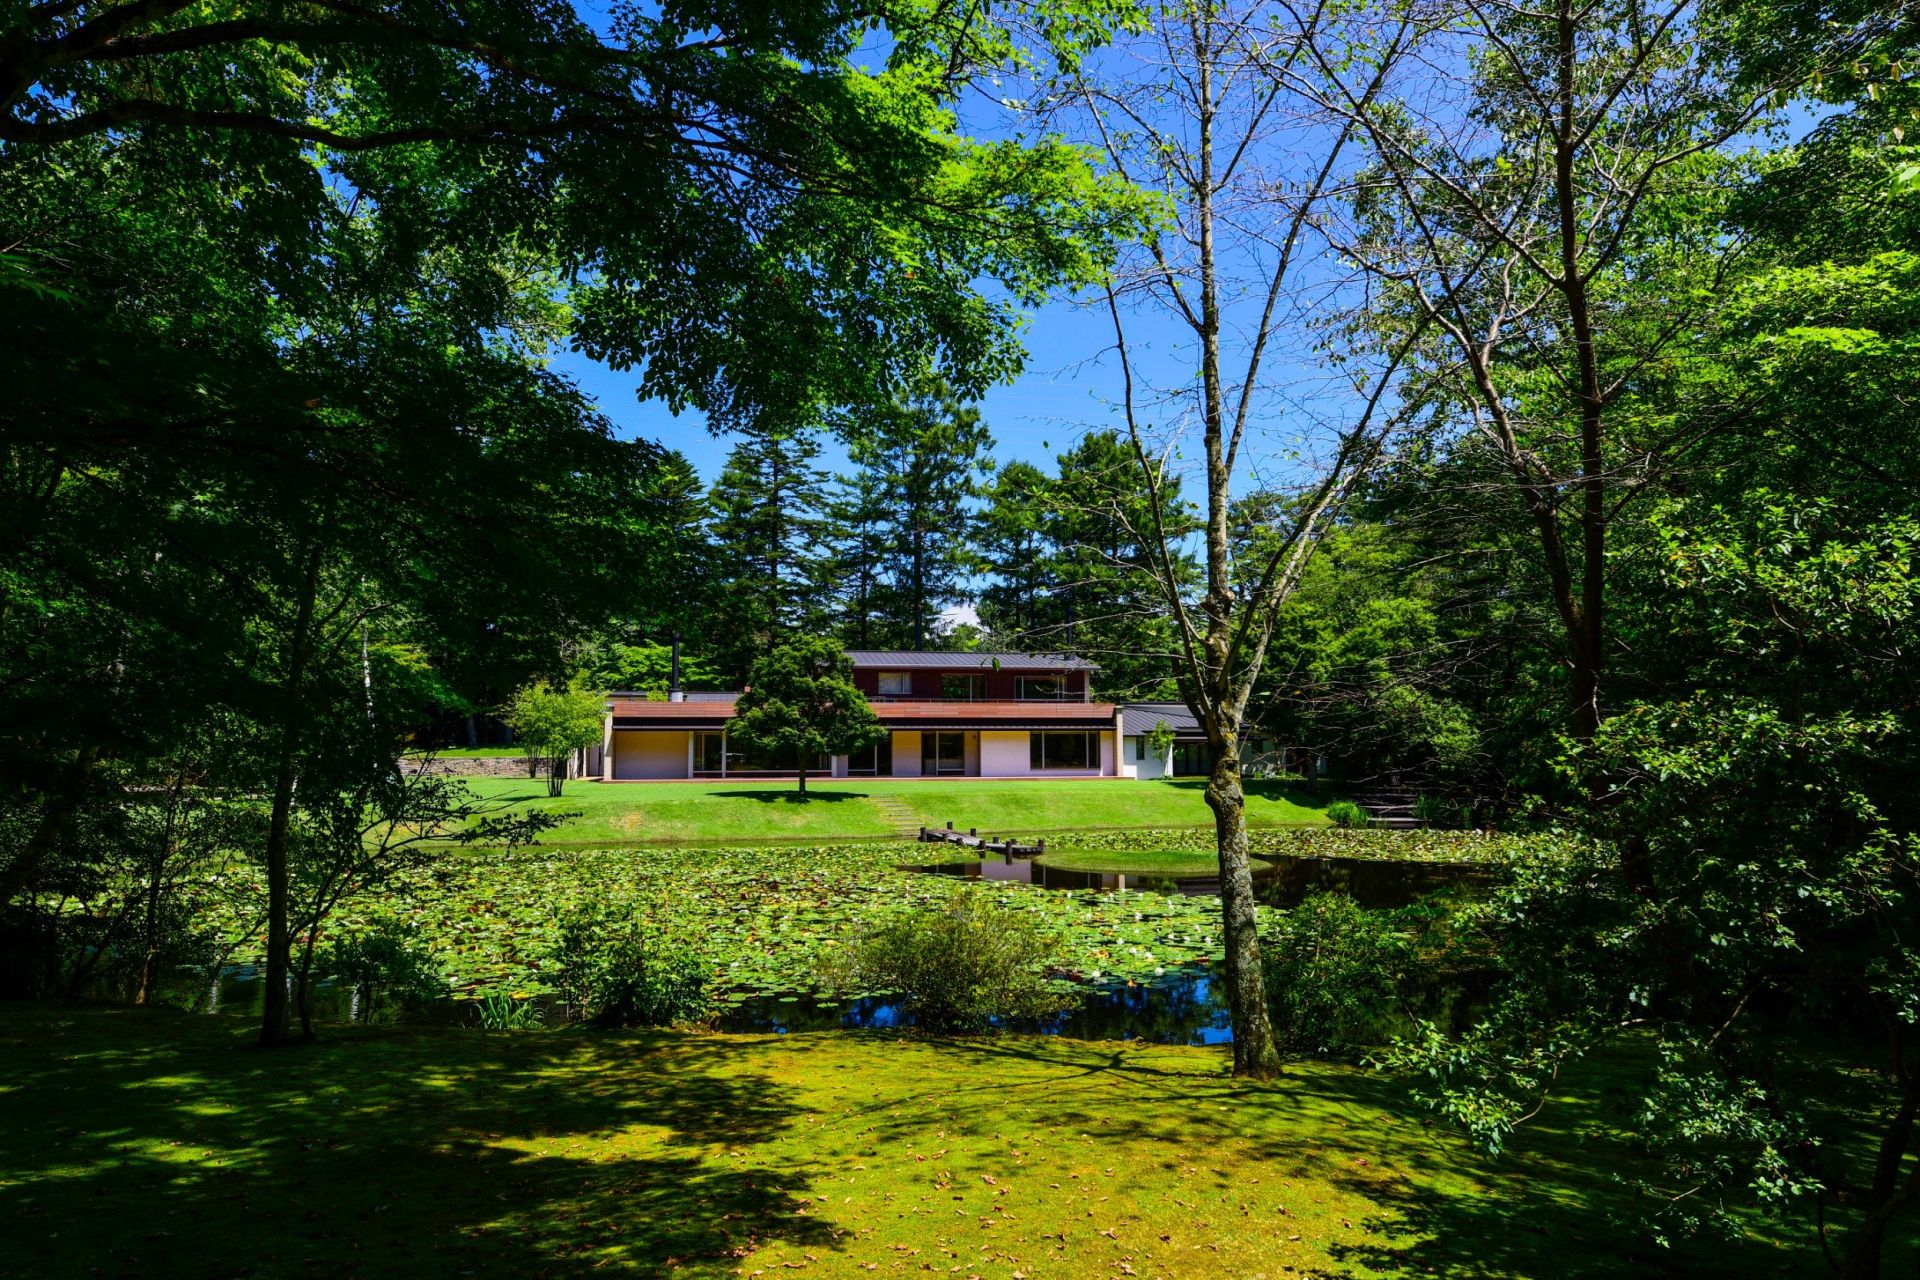 Sale Luxury villa Karuizawa (389-01) 518 m²